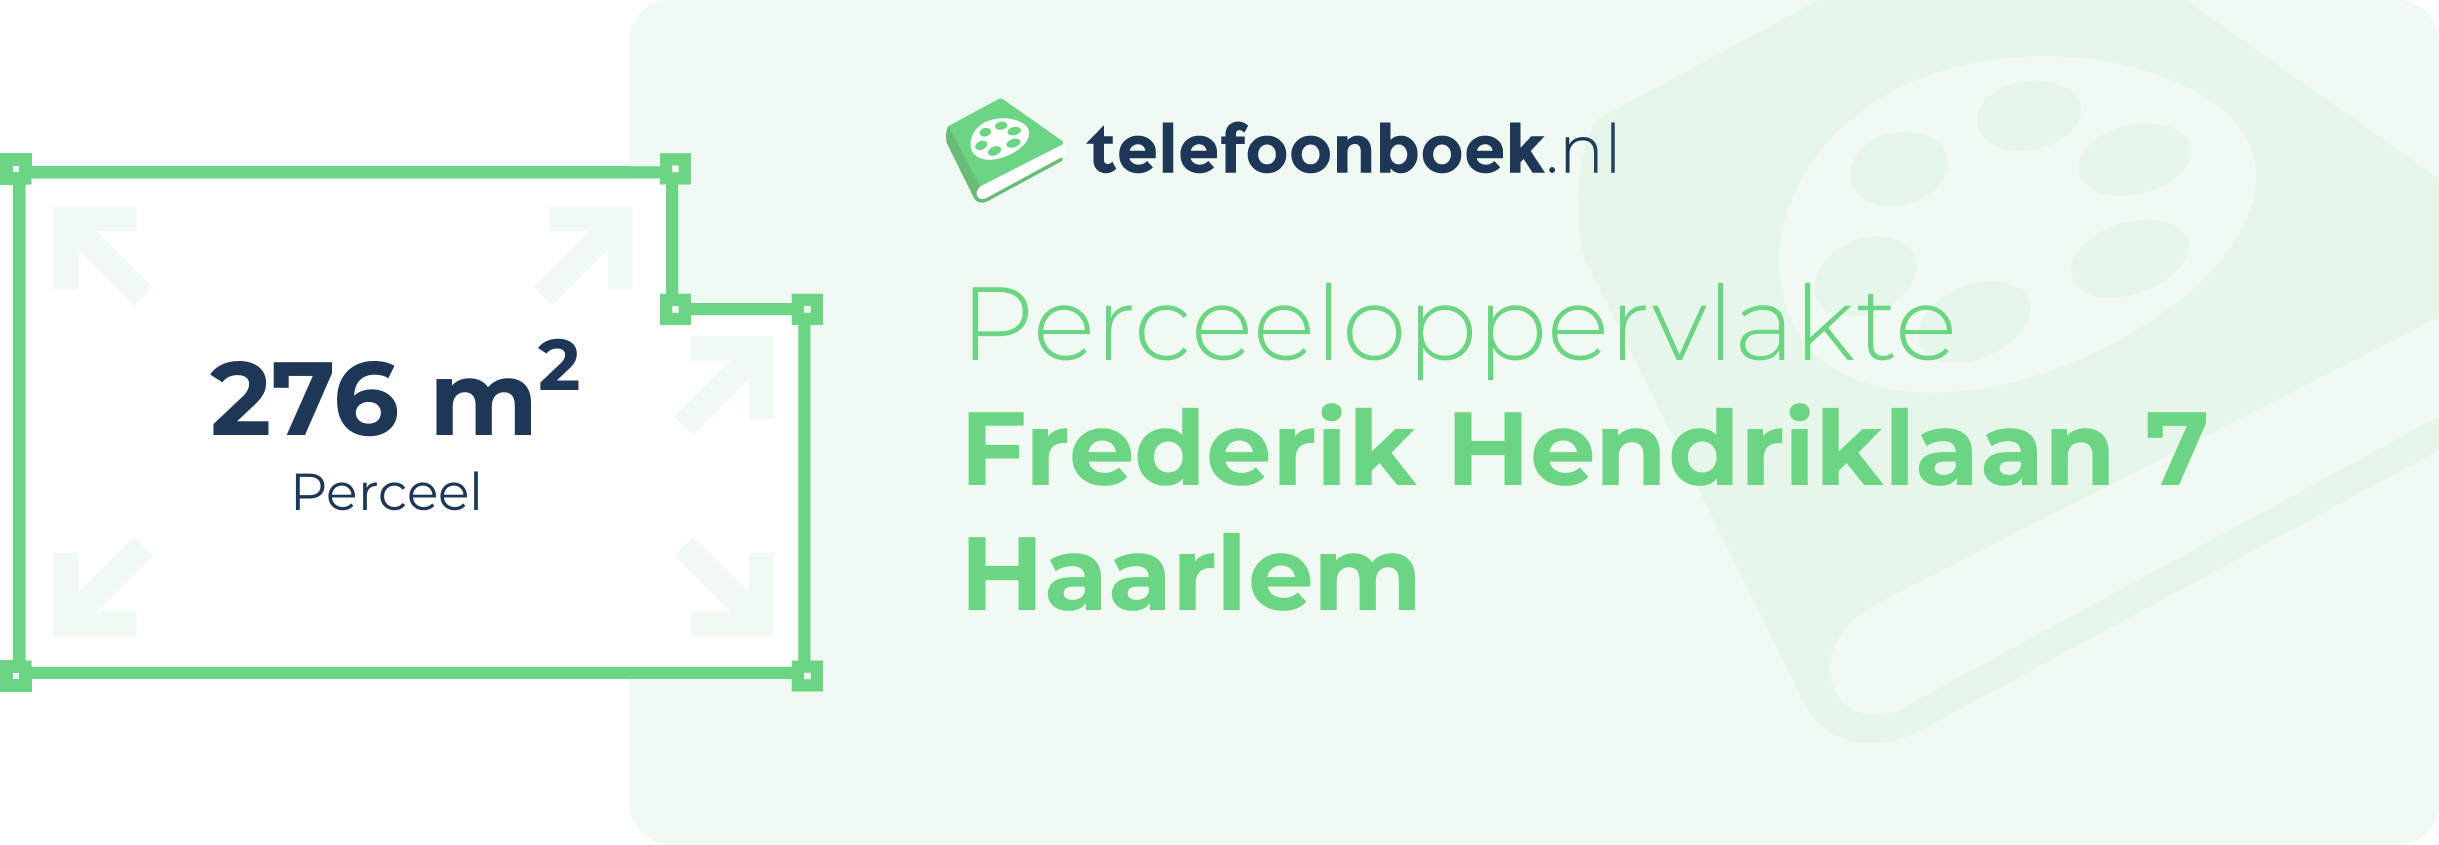 Perceeloppervlakte Frederik Hendriklaan 7 Haarlem